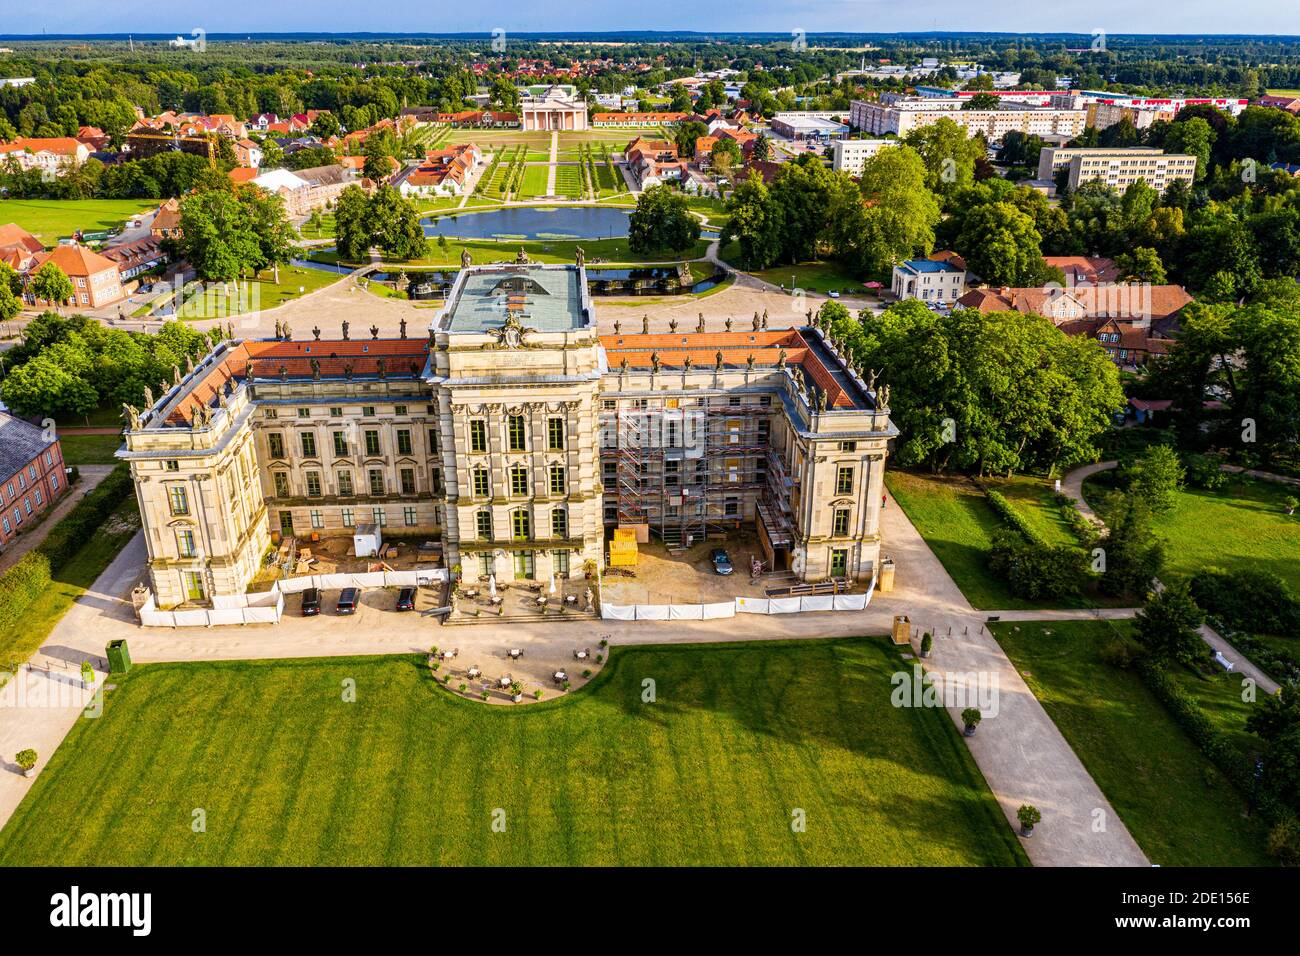 Luftbild Schloss Ludwigslust, Ludwigslust, Mecklenburg-Vorpommern, Deutschland, Europa Stockfoto